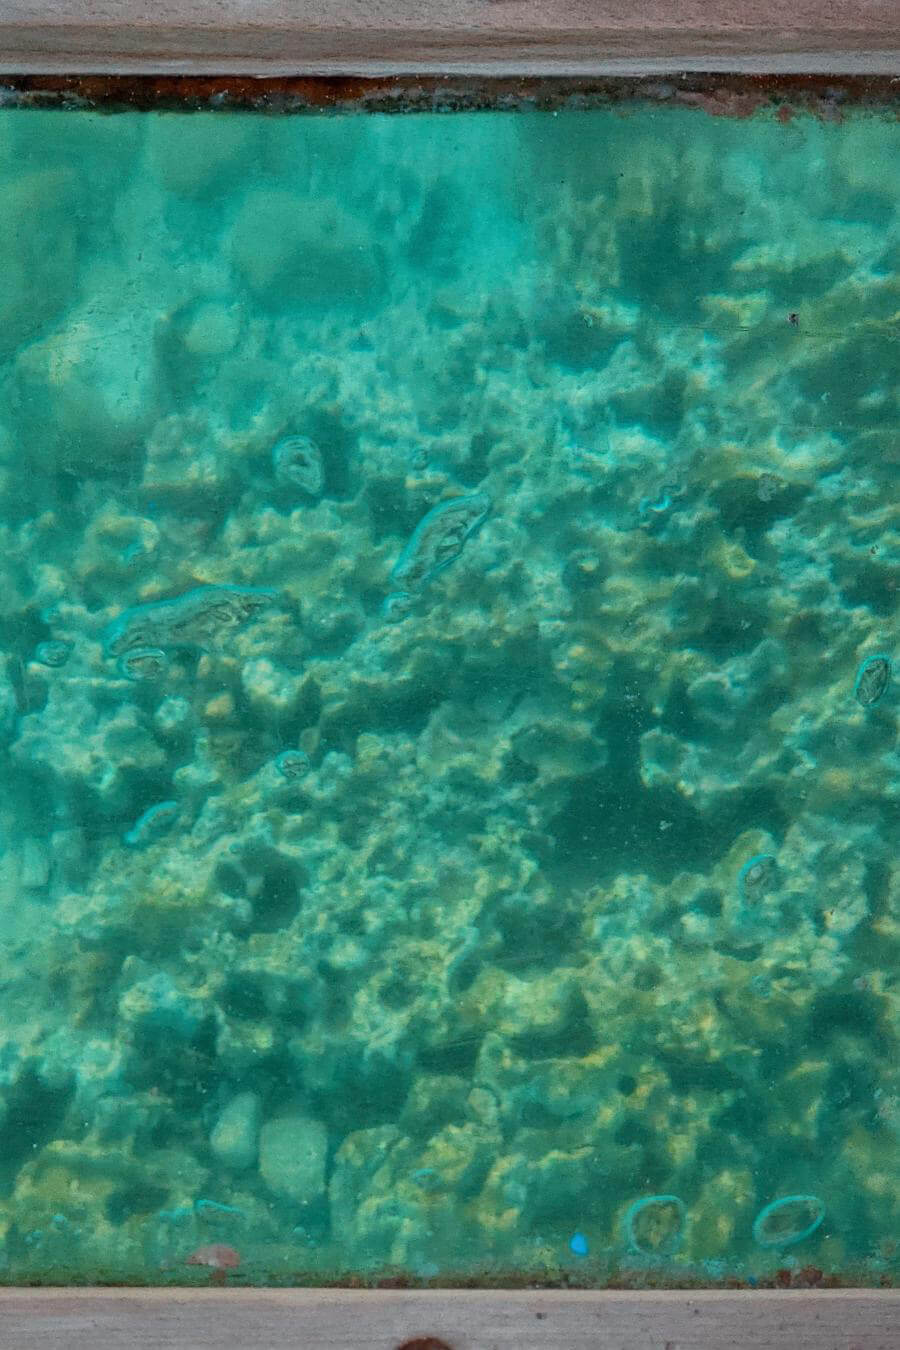 aqaba barriera corallina (1)